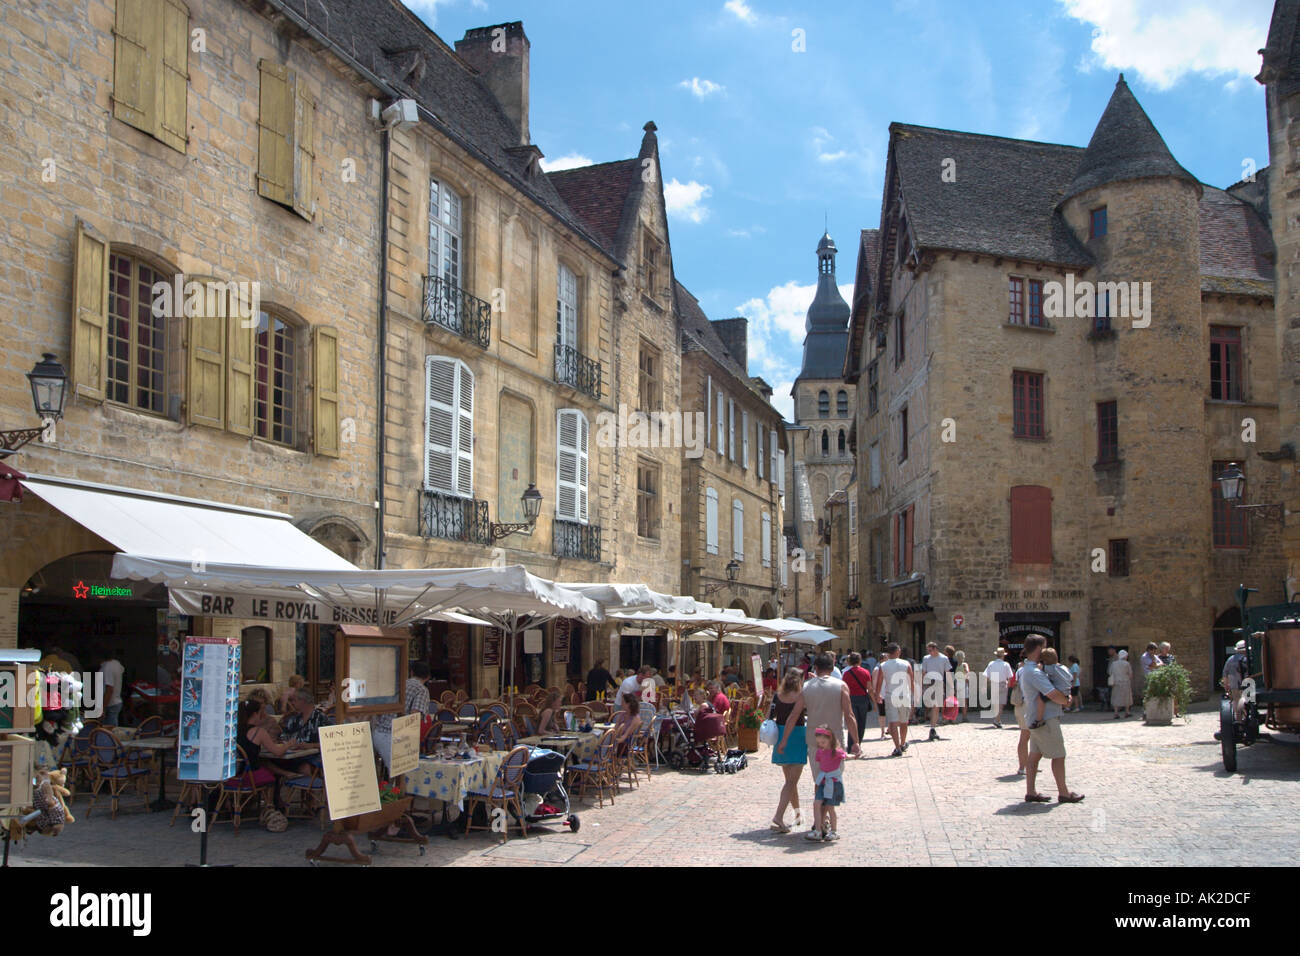 Place de la liberté dans le centre de la vieille ville, Sarlat, Périgord Noir, Dordogne, France Banque D'Images